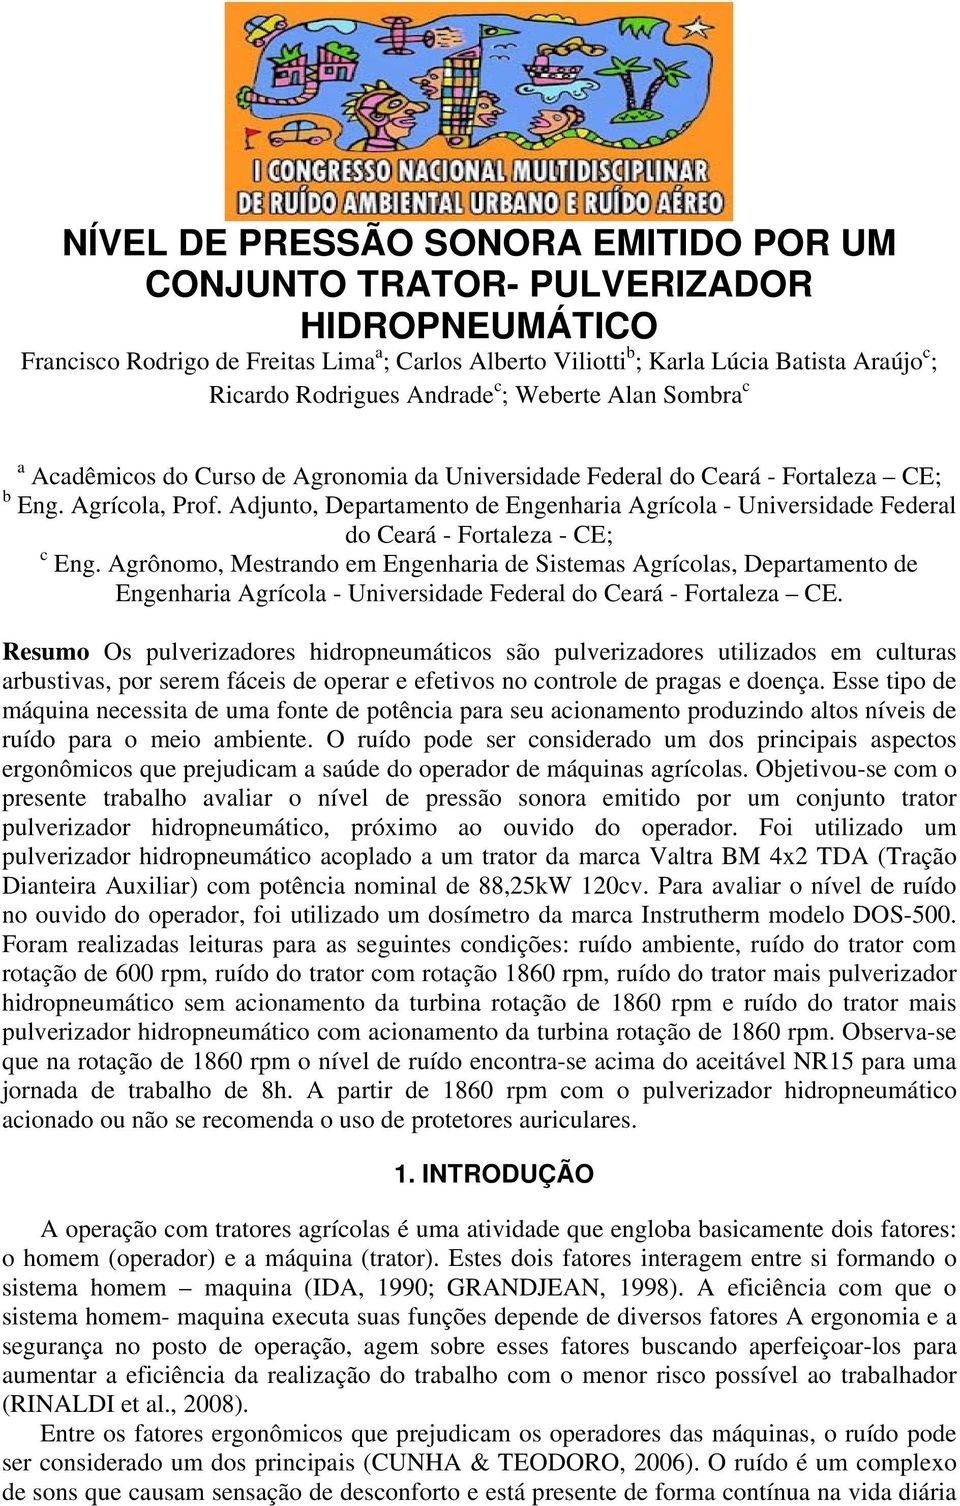 Adjunto, Departamento de Engenharia Agrícola - Universidade Federal do Ceará - Fortaleza - CE; c Eng.